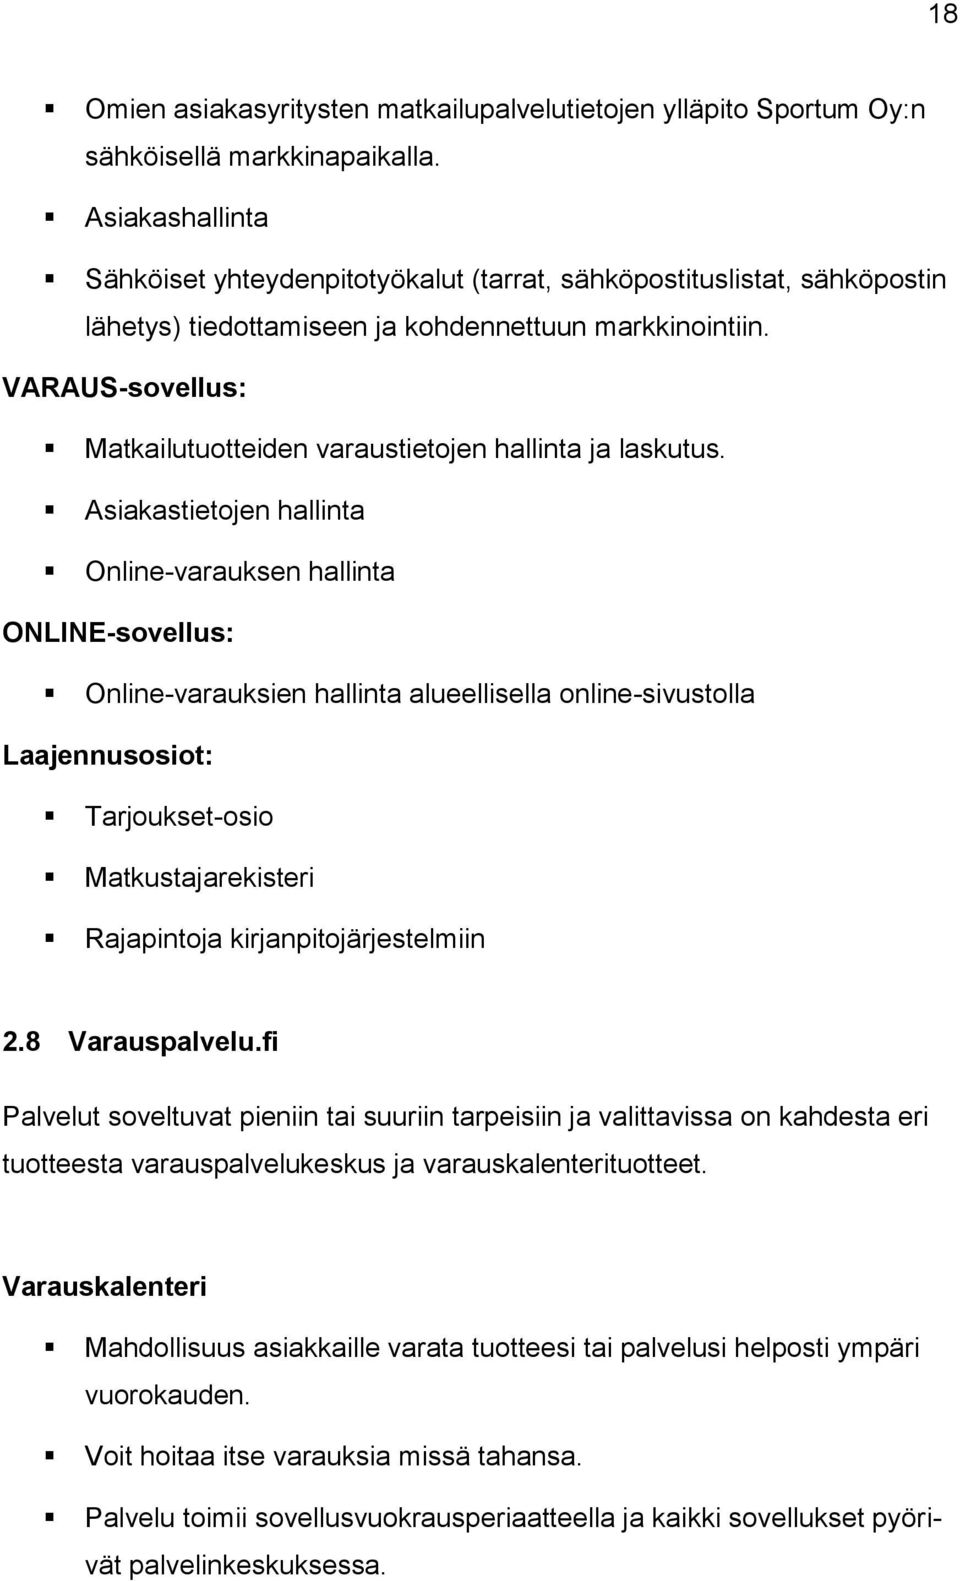 VARAUS-sovellus: Matkailutuotteiden varaustietojen hallinta ja laskutus.